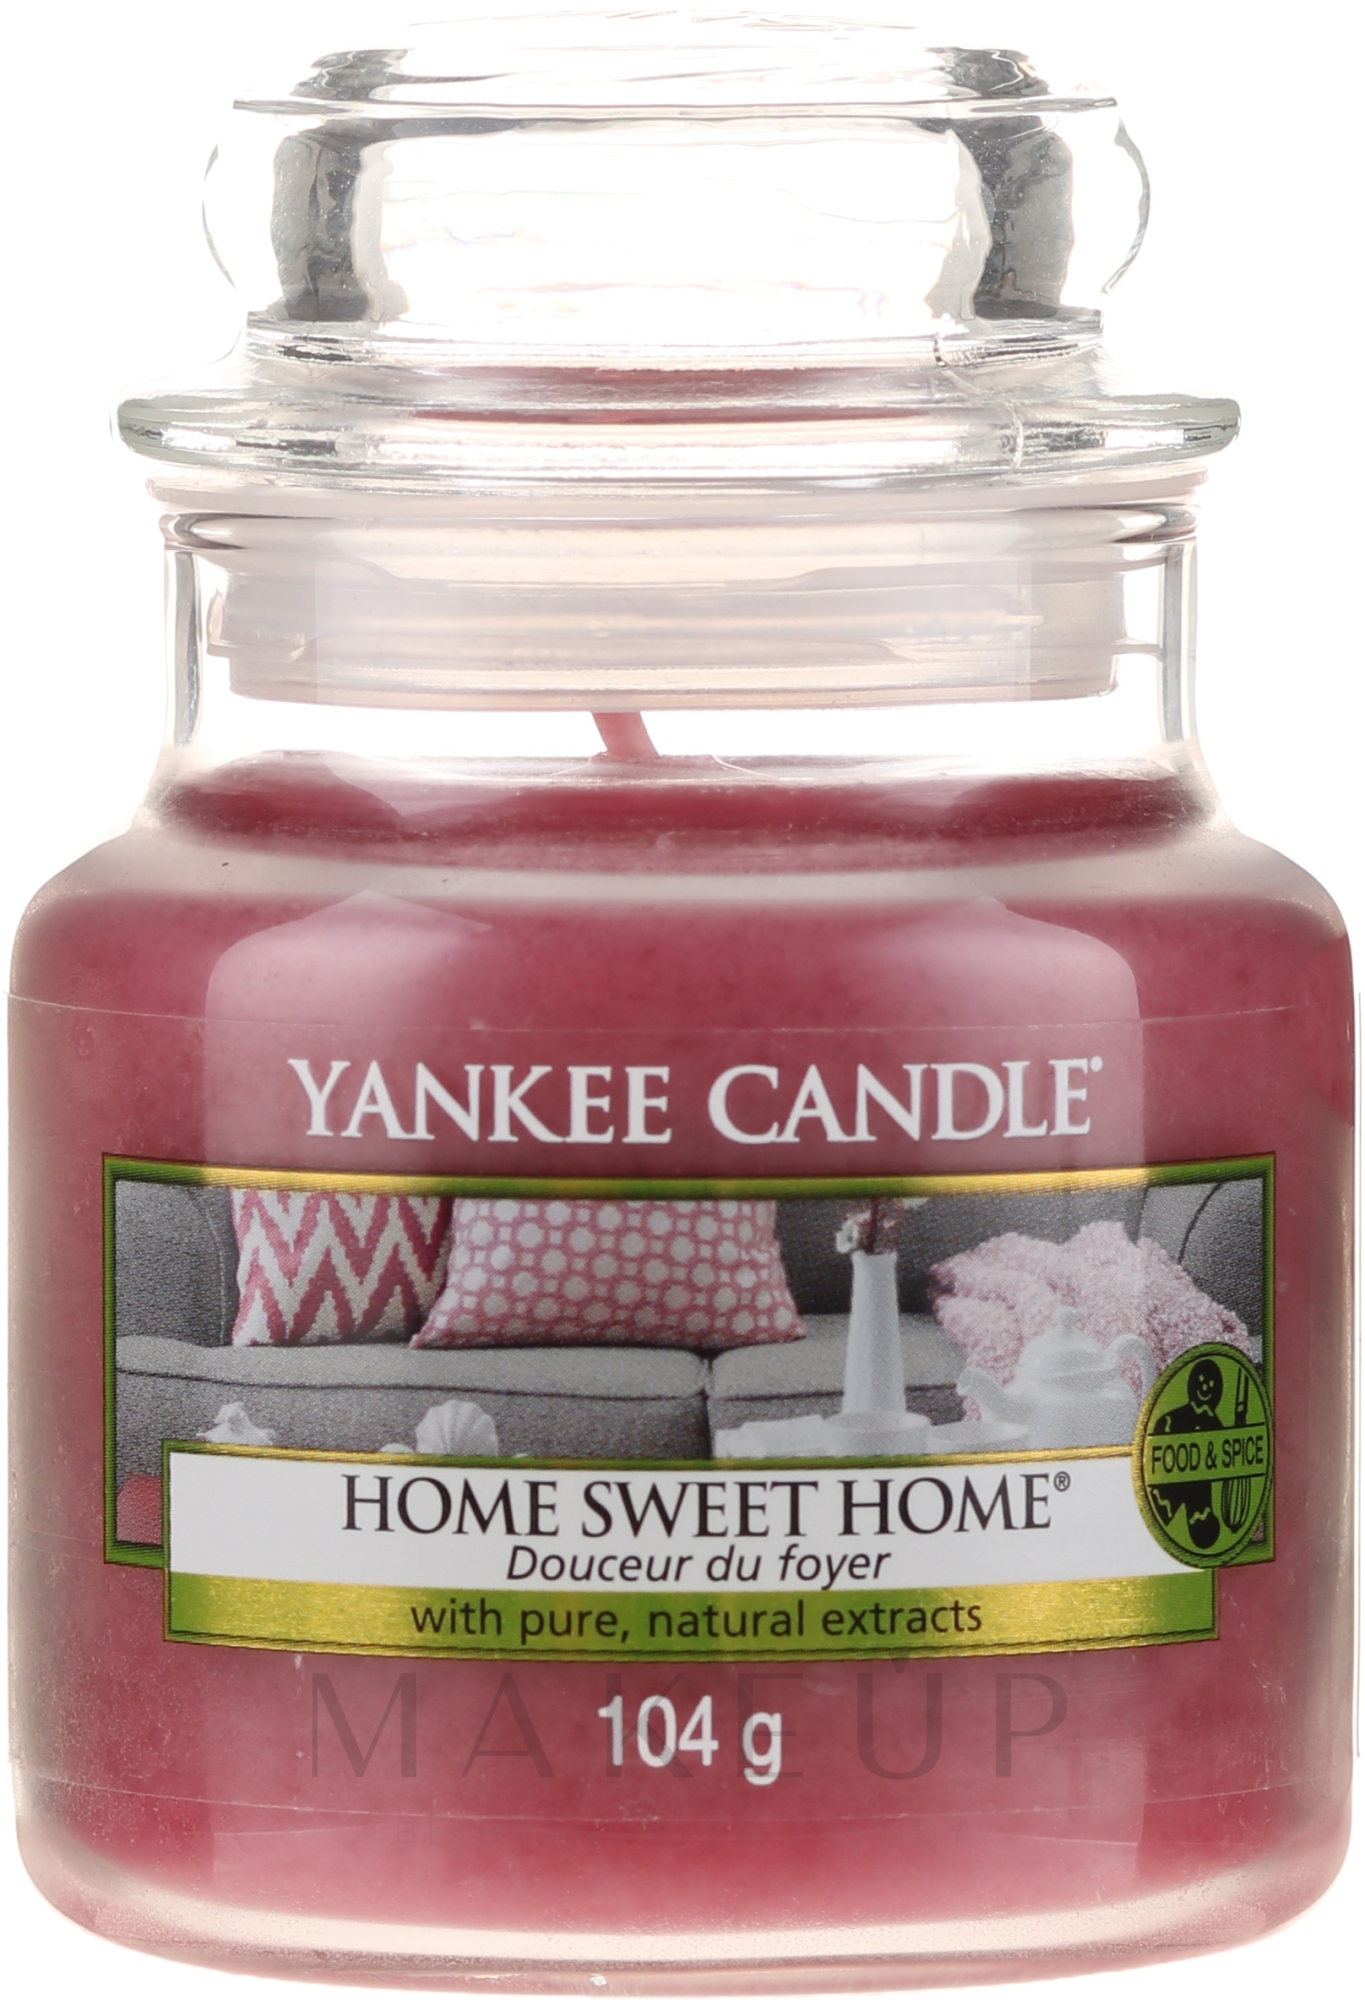 Duftkerze im Glas Home Sweet Home - Yankee Candle Home Sweet Home Jar — Bild 104 g